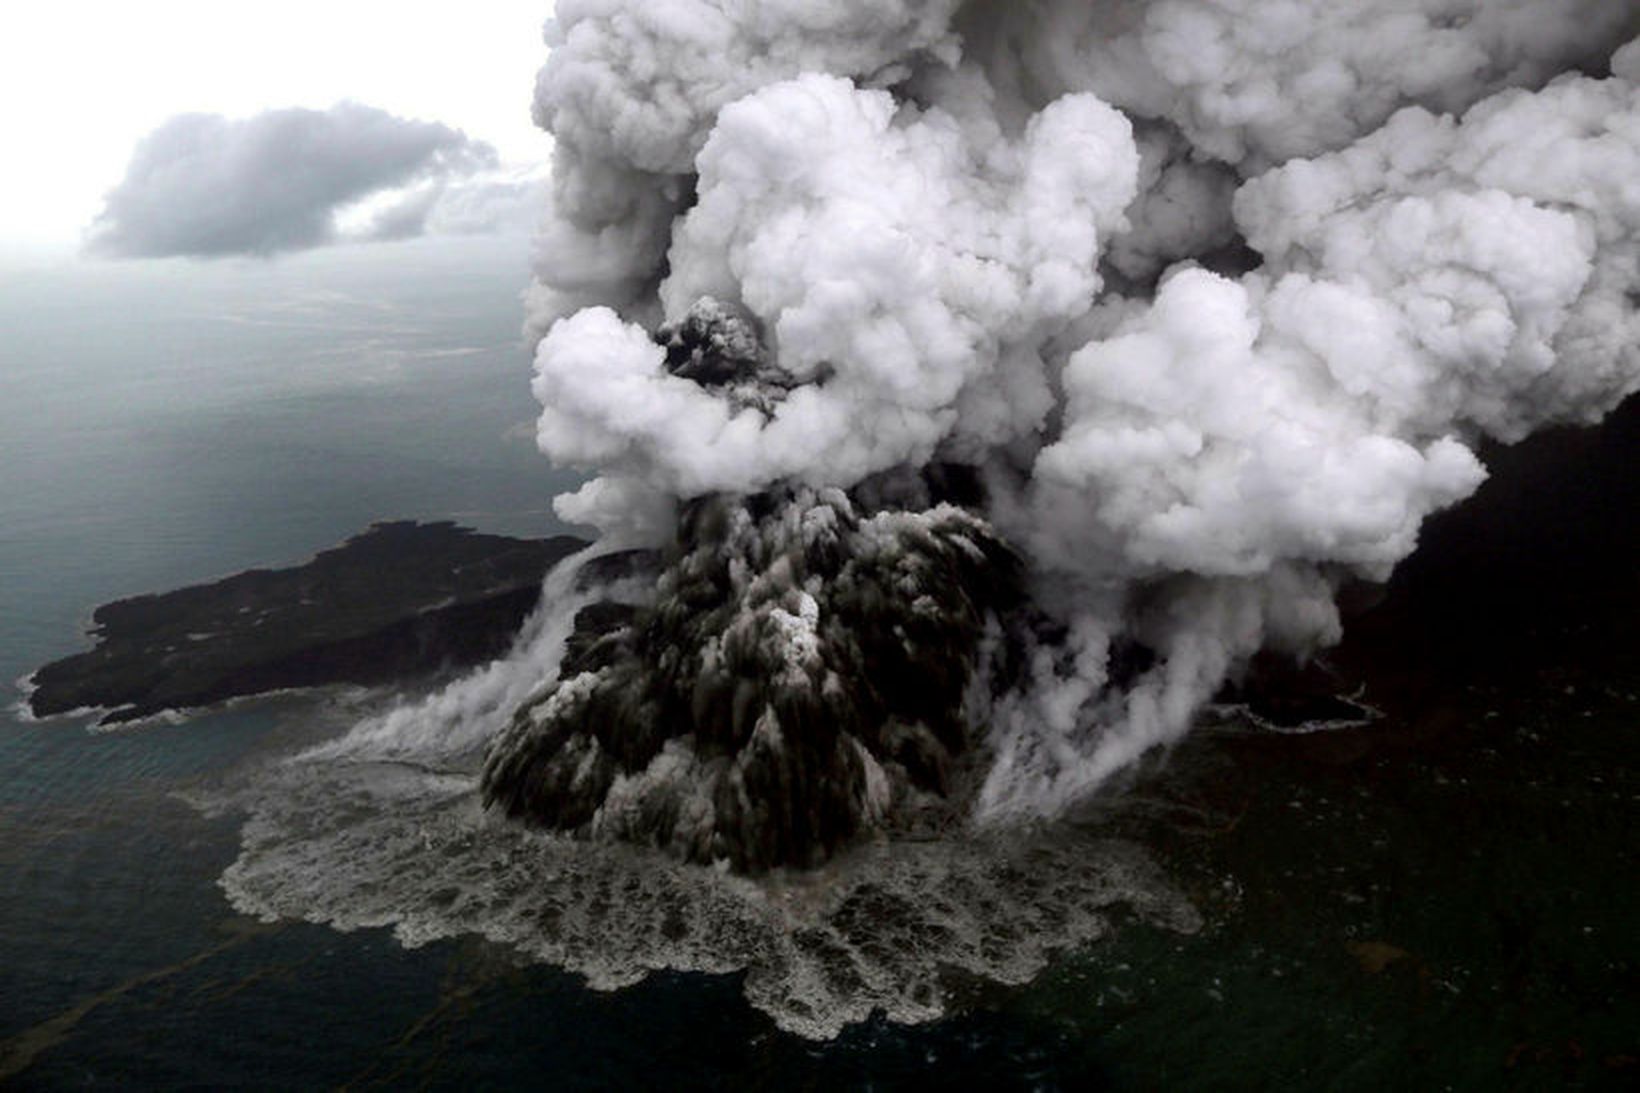 Anak-Krakatau þann 23. desember, daginn eftir að flóðbylgja sem orsakaðist …